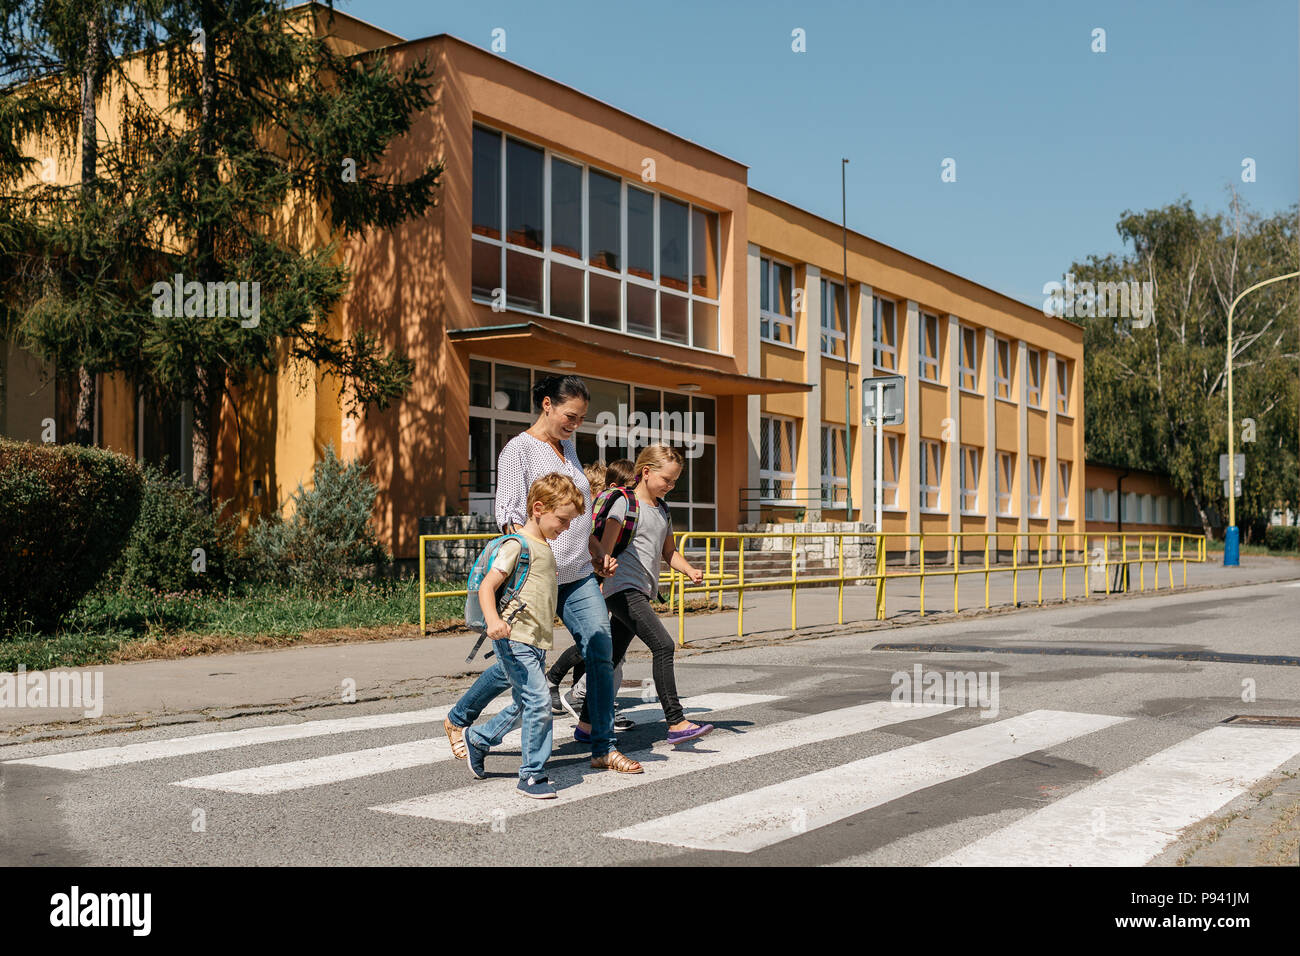 Sicurezza stradale - bambini attraversare una strada accompagnati da un adulto. Madre prelevare i figli a scuola. Foto Stock